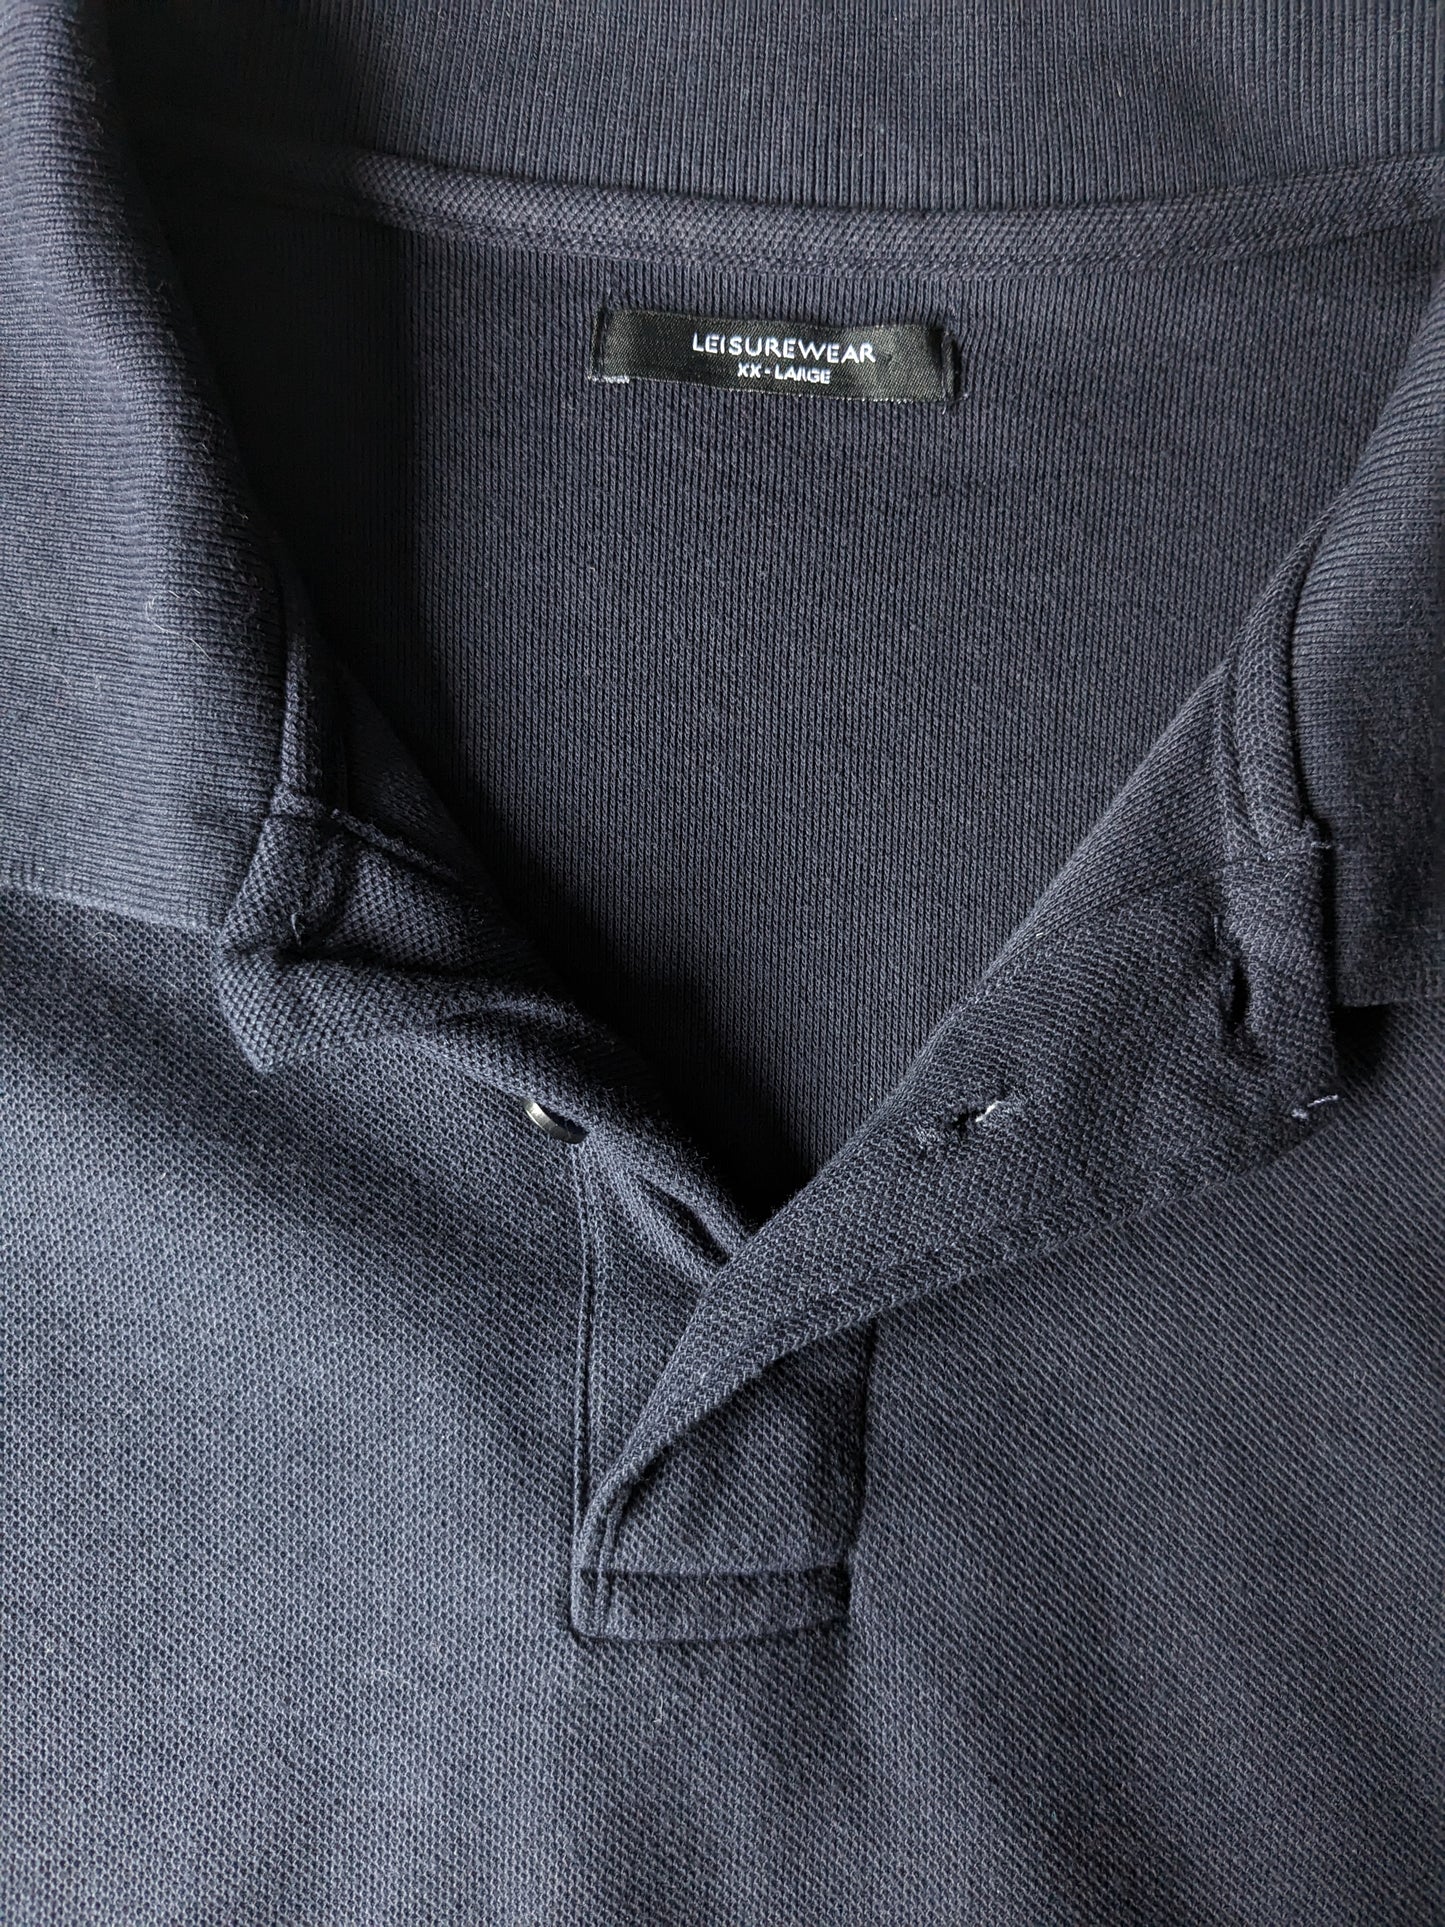 calle. Bernard Leisure Wear Polo. Color azul oscuro. Tamaño 2L / XXL.